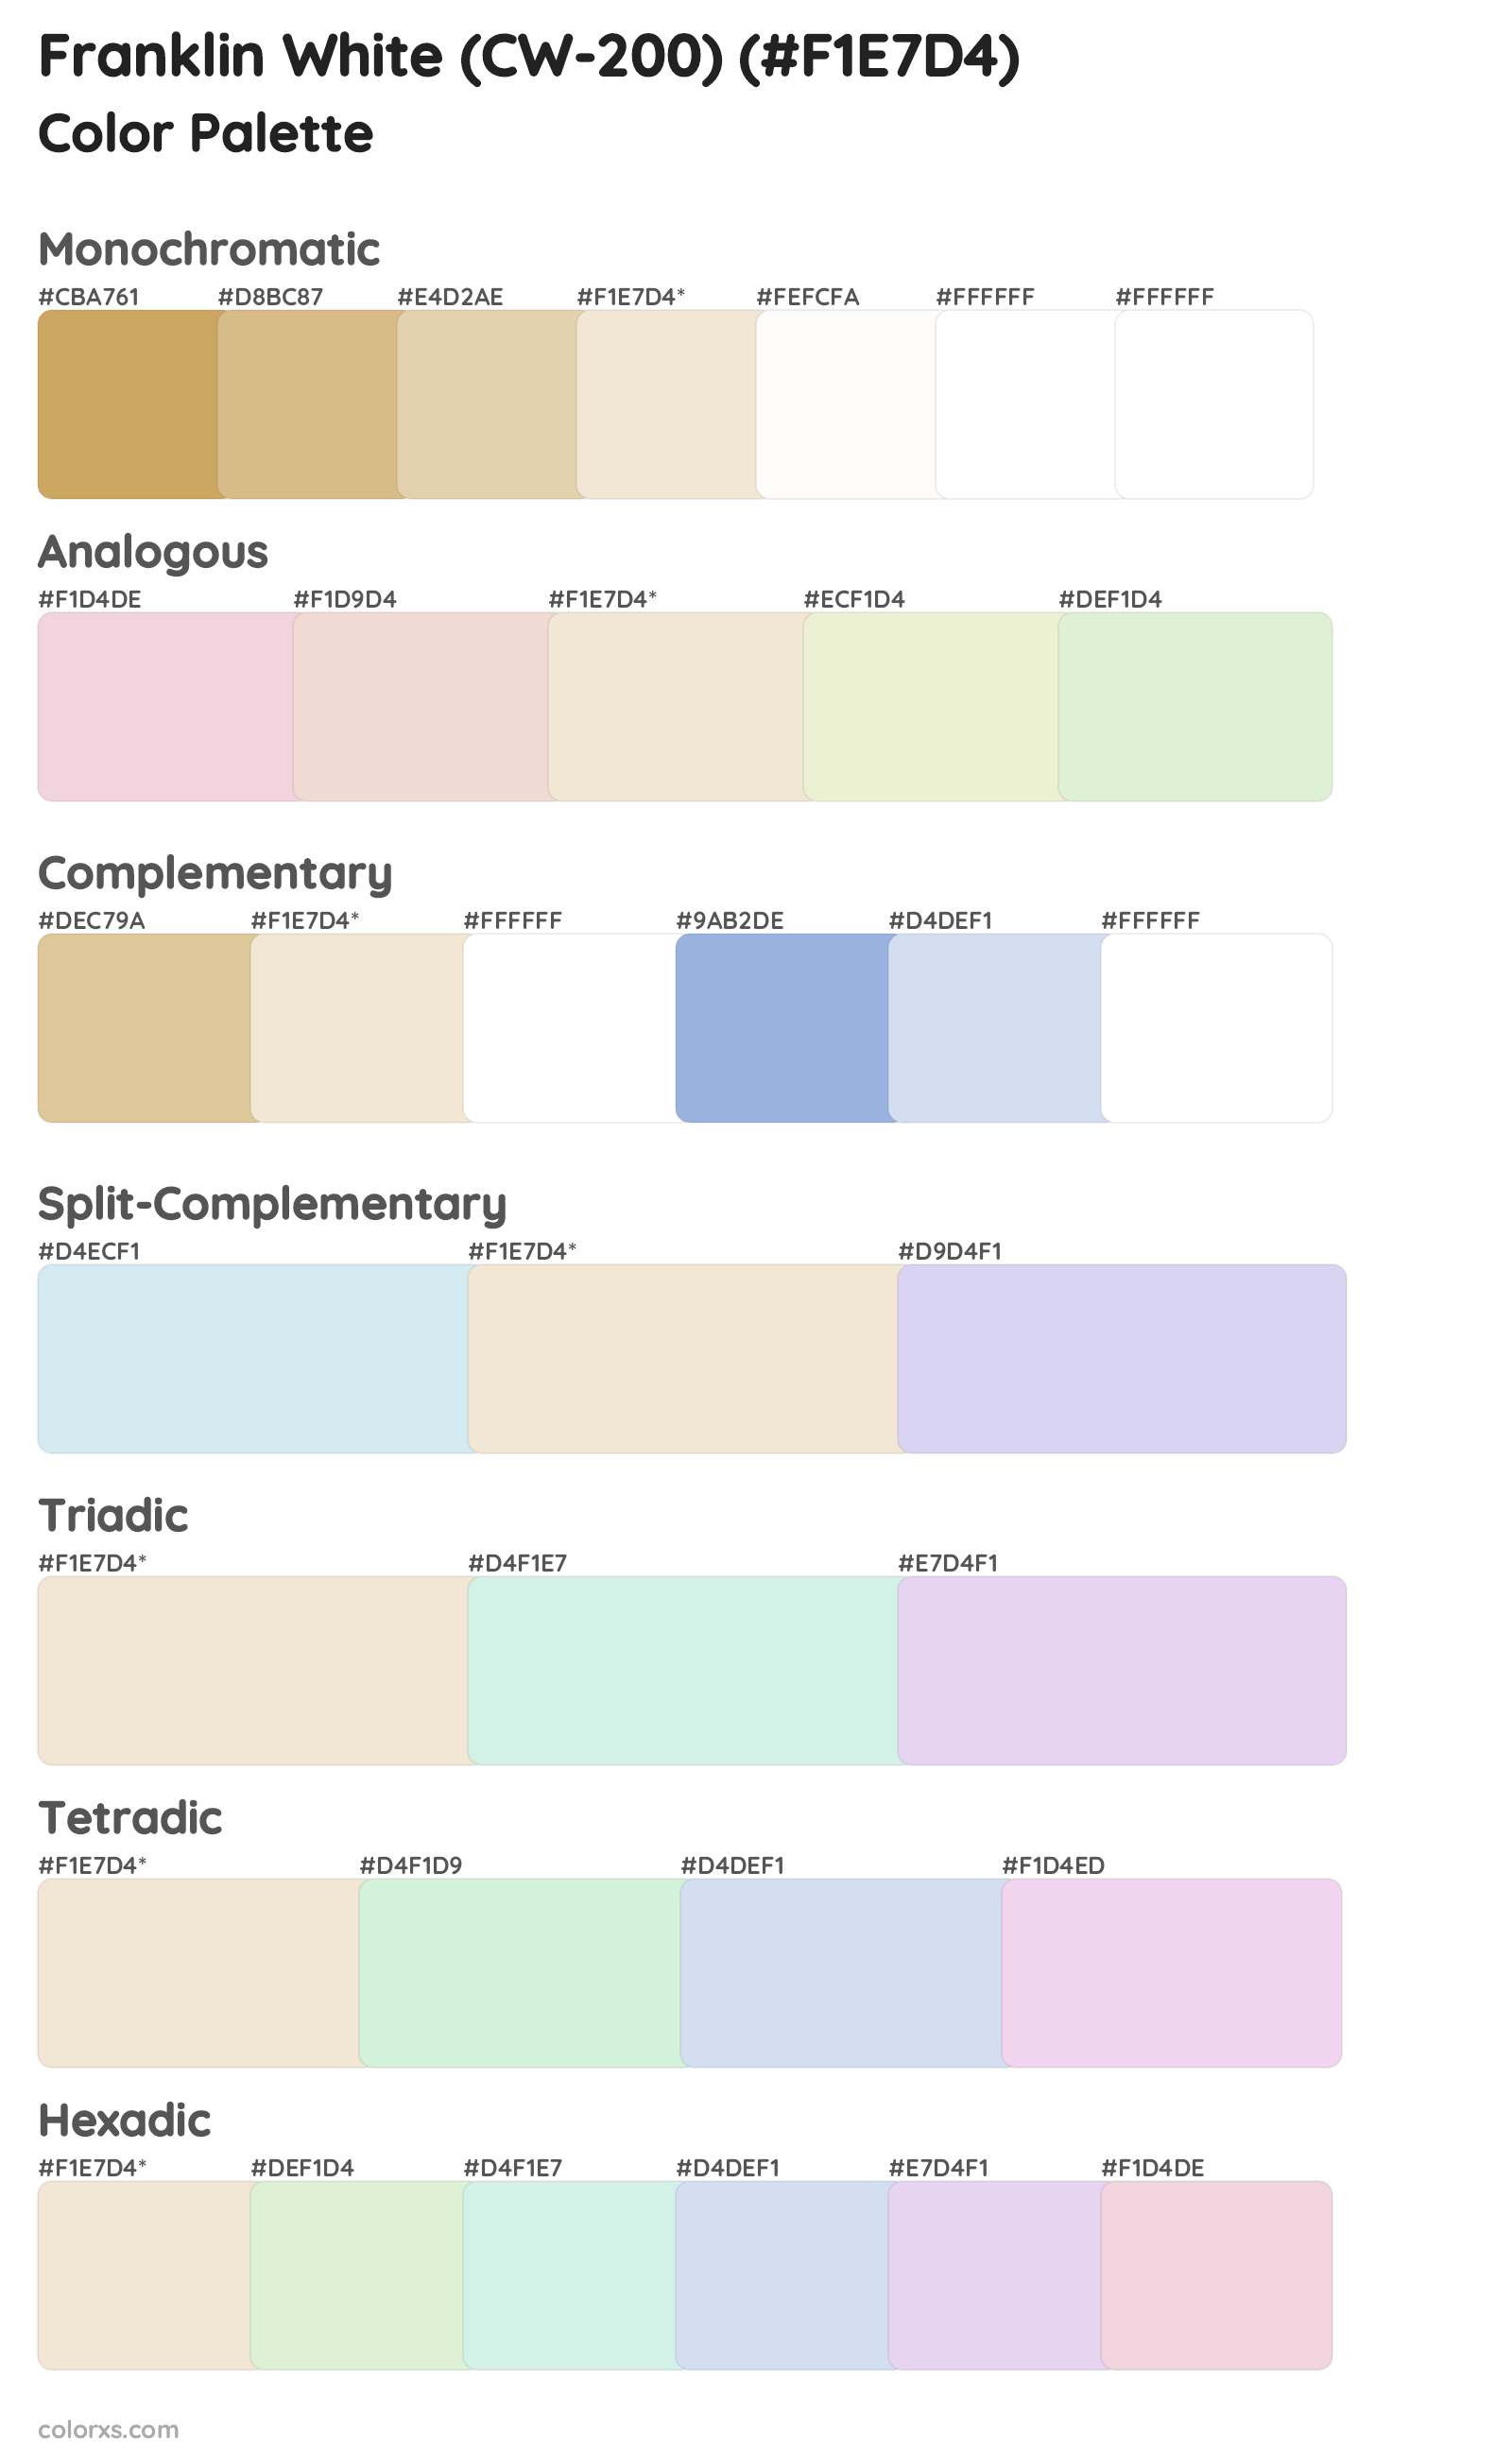 Franklin White (CW-200) Color Scheme Palettes